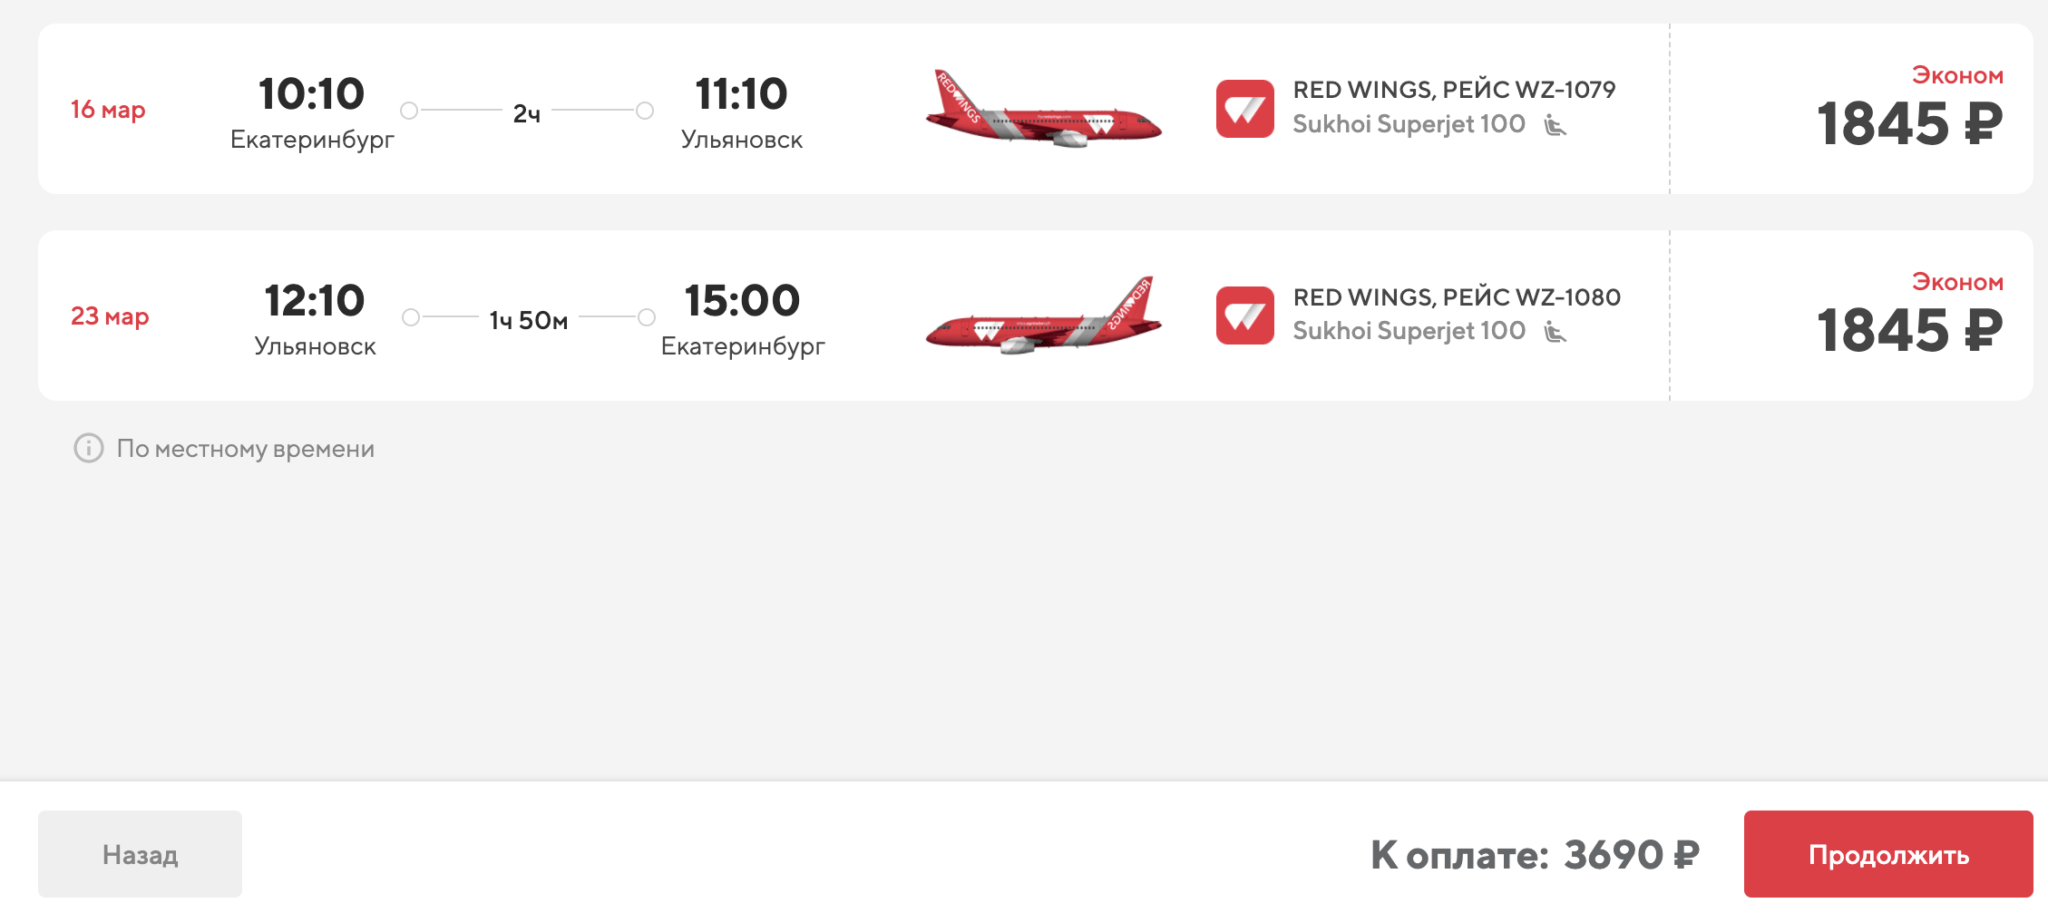 Прямые рейсы RedWings из Екатеринбурга в Ульяновск от 3700₽ туда-обратно (в марте)